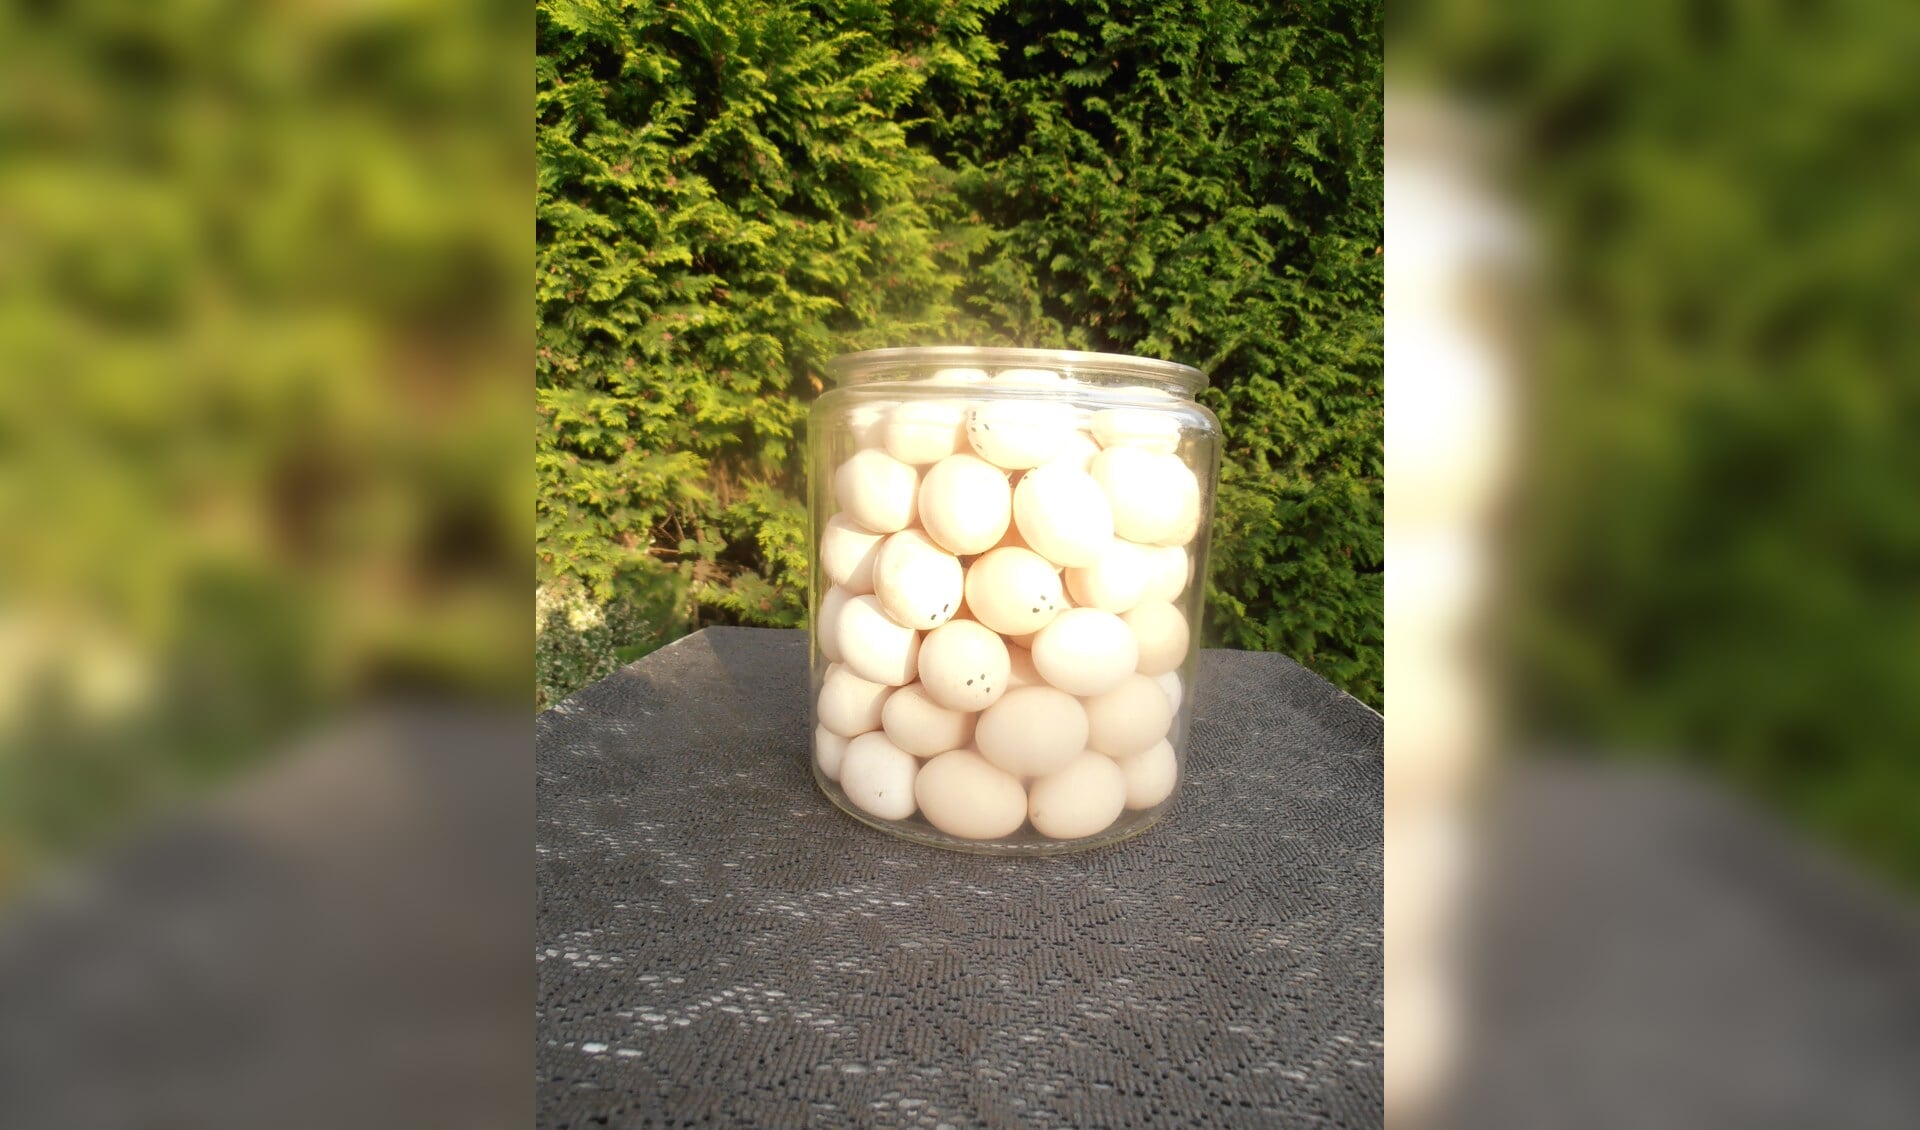 Hoeveel eieren zitten in deze pot? Dat was de prijsvraag van NPV Neede.Foto: PR